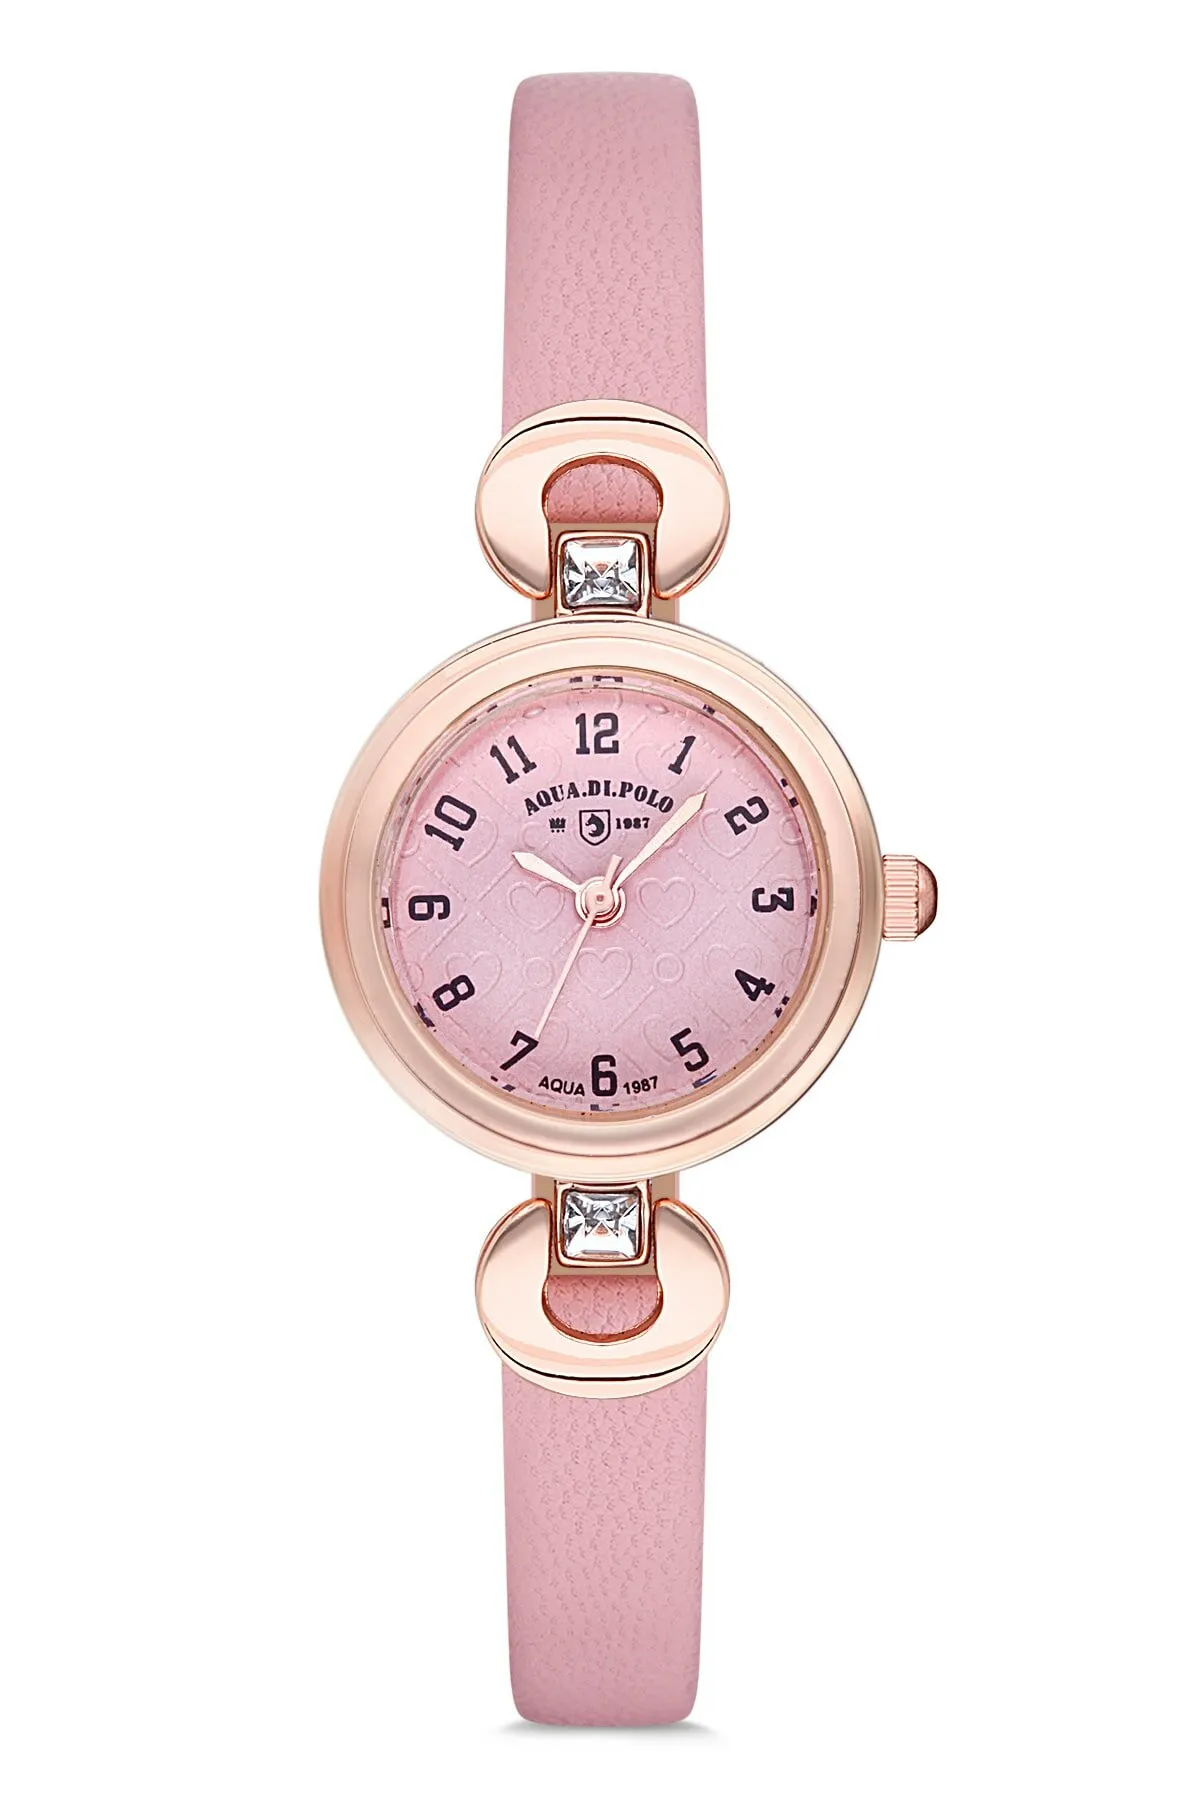 Кожаные женские наручные часы Di Polo apwa030902#1